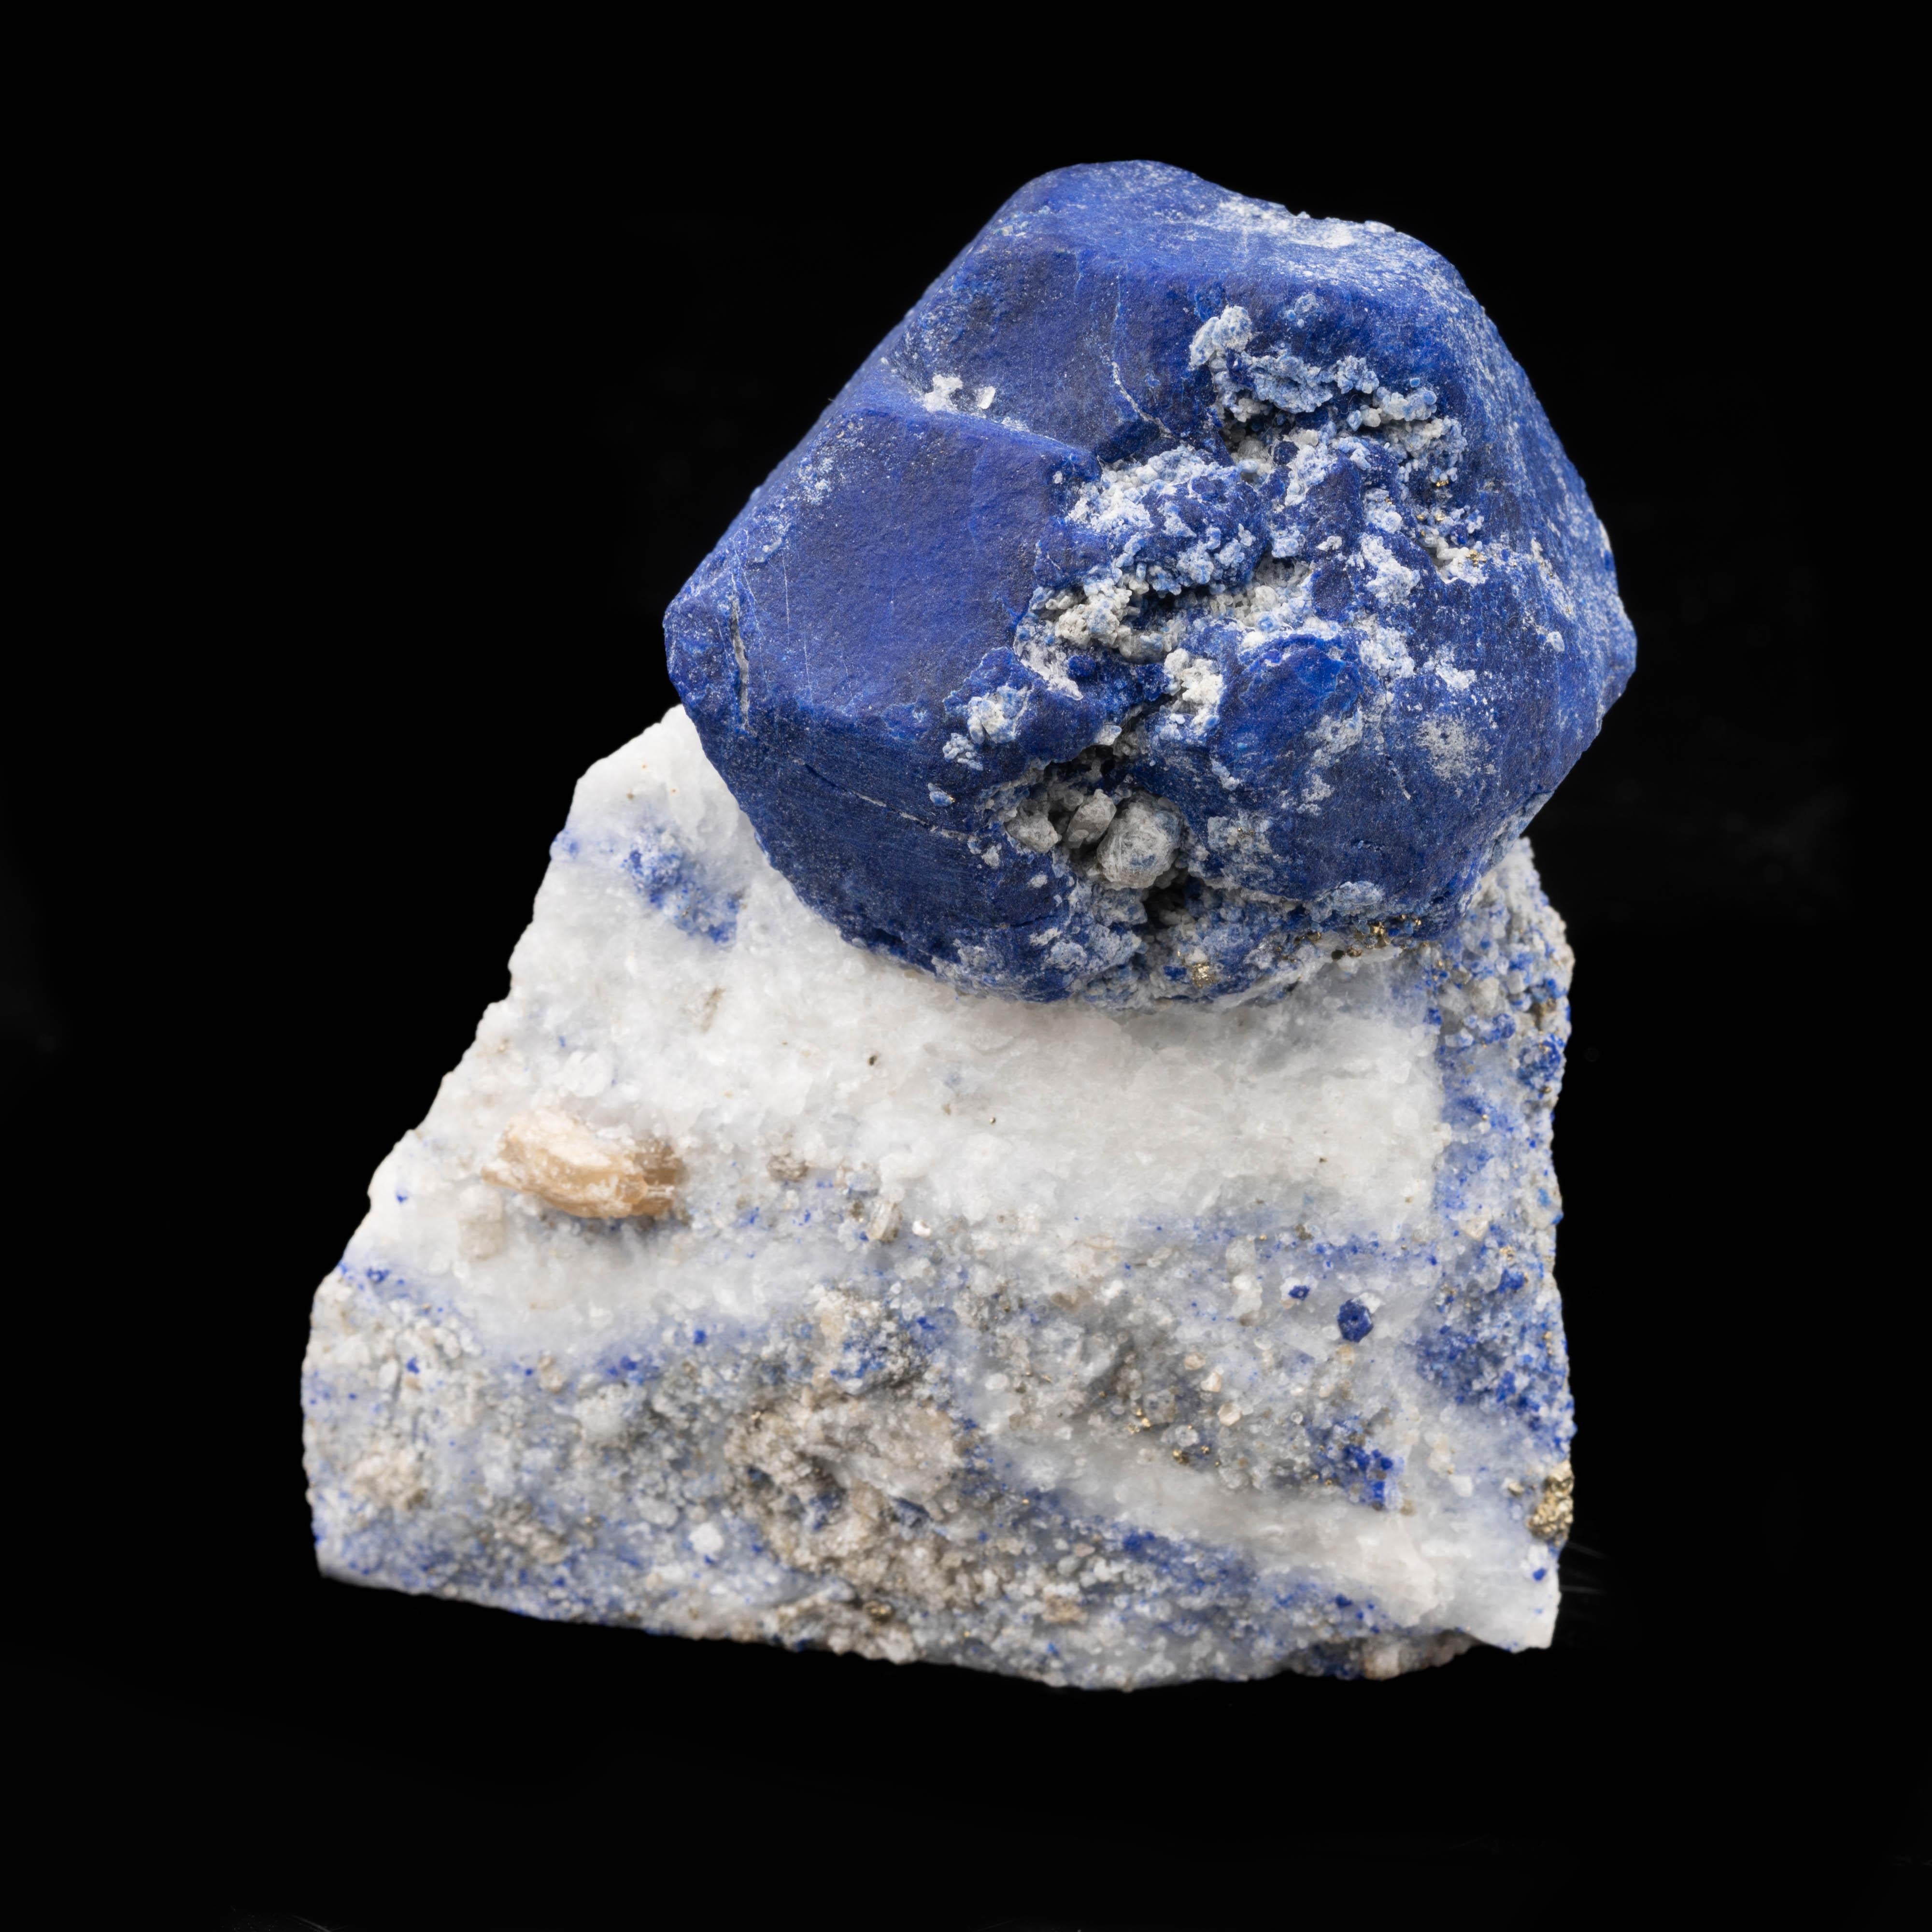 La lazurite, également connue sous le nom d'afghanite, est un minéral riche en sodalite bleue que l'on ne trouve qu'en Afghanistan et qui constitue la phase bleue du lapis-lazuli. La lazurite a été utilisée historiquement dans les pigments pour la